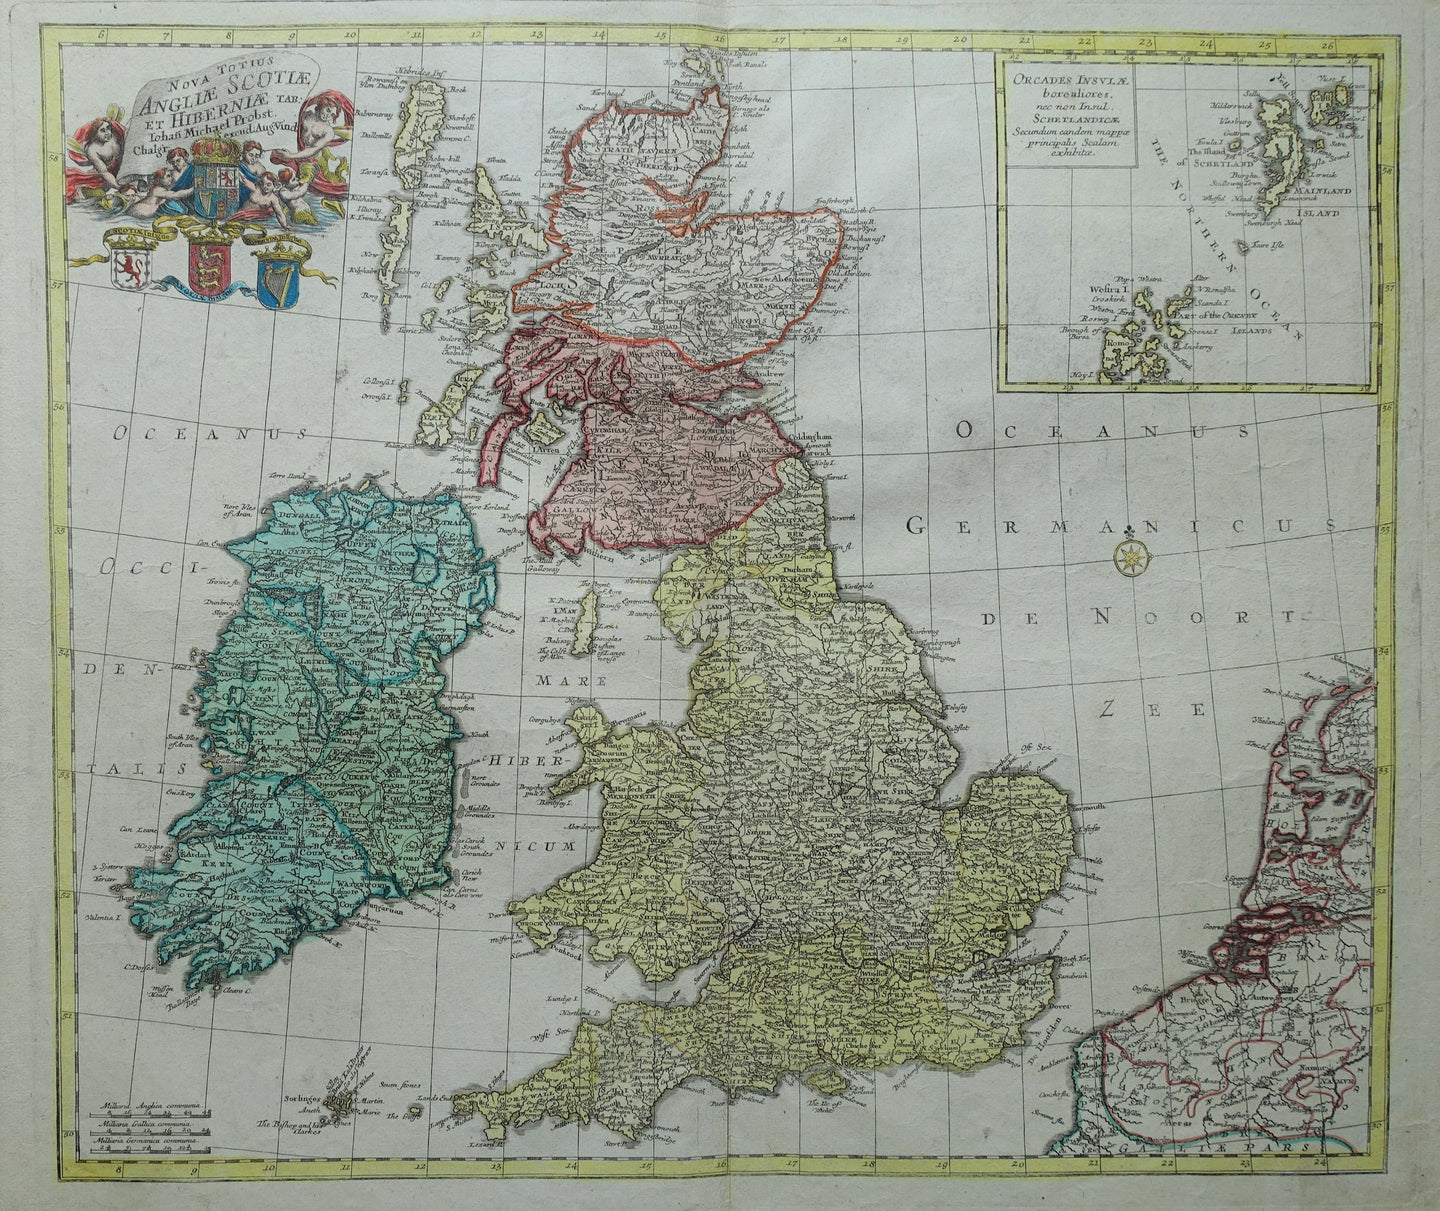 Groot Brittannië Ierland British Isles Great Britain Ireland - Johann Michael Probst - ca 1760